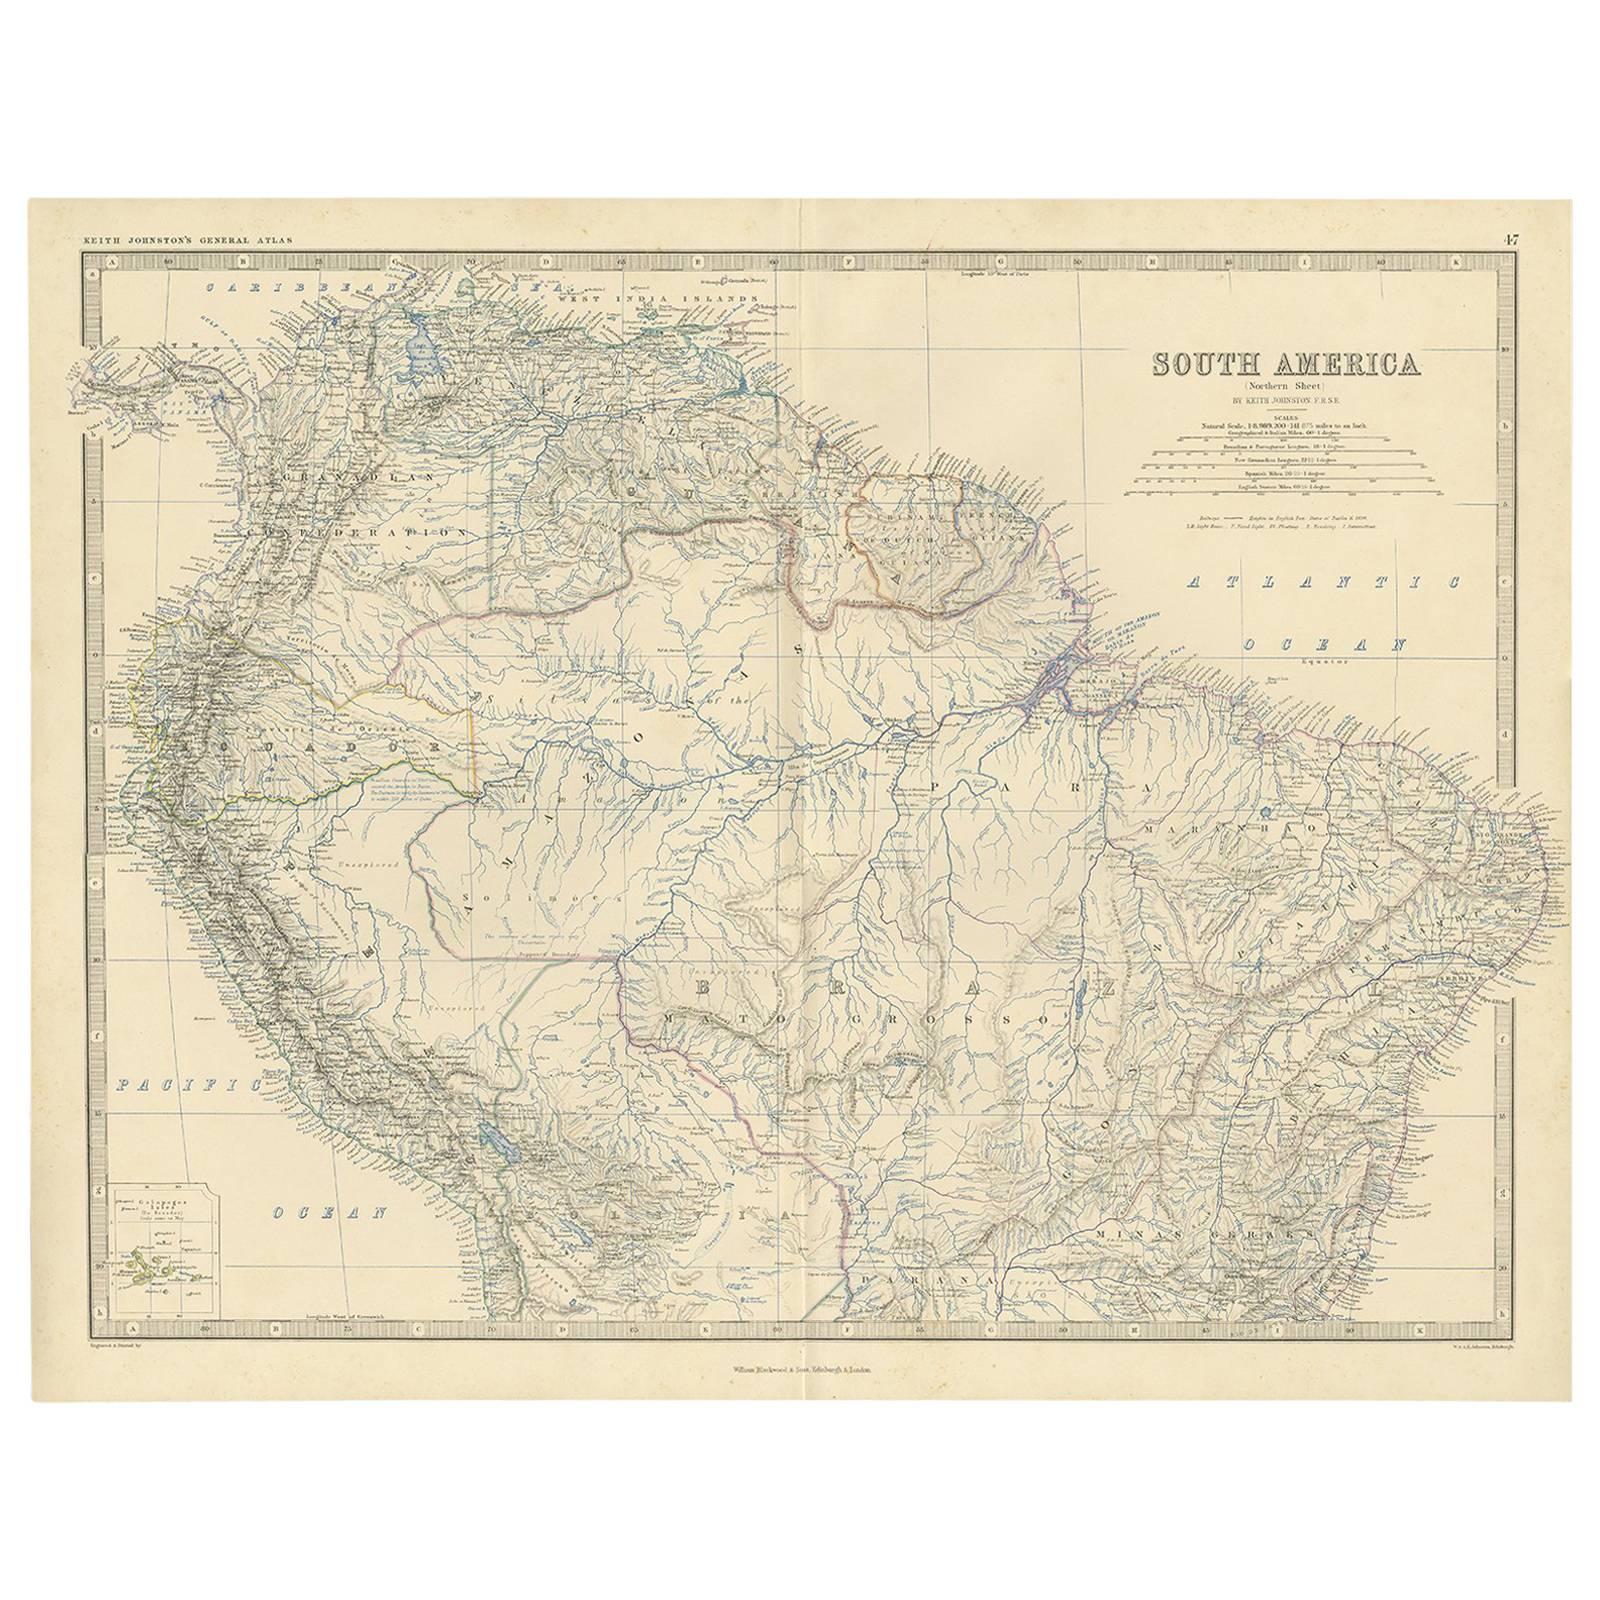 Carte ancienne d'Amérique du Sud "North" par A.K. Johnston, 1865